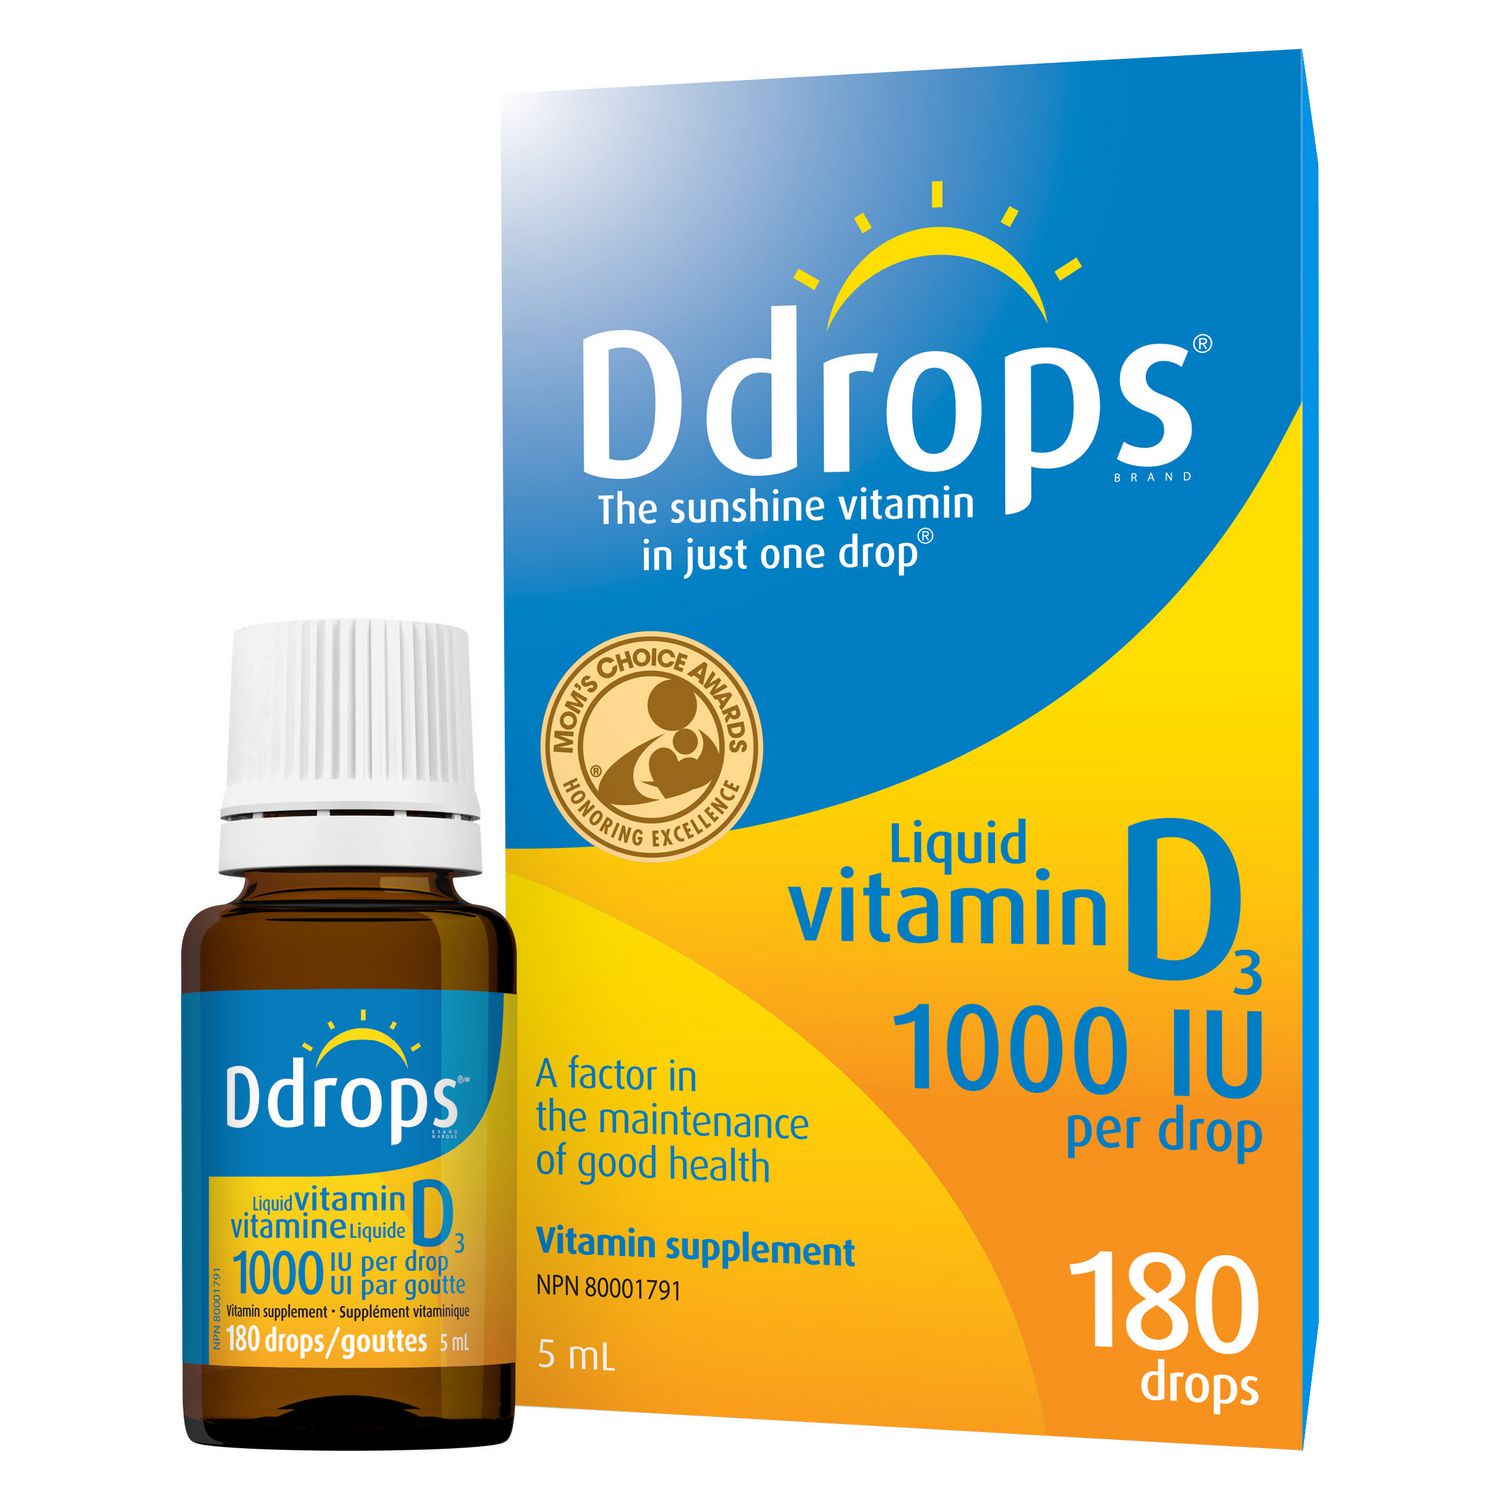 Ddrops® Liquid Vitamin D3 Vitamin Supplement, 1000 IU ...